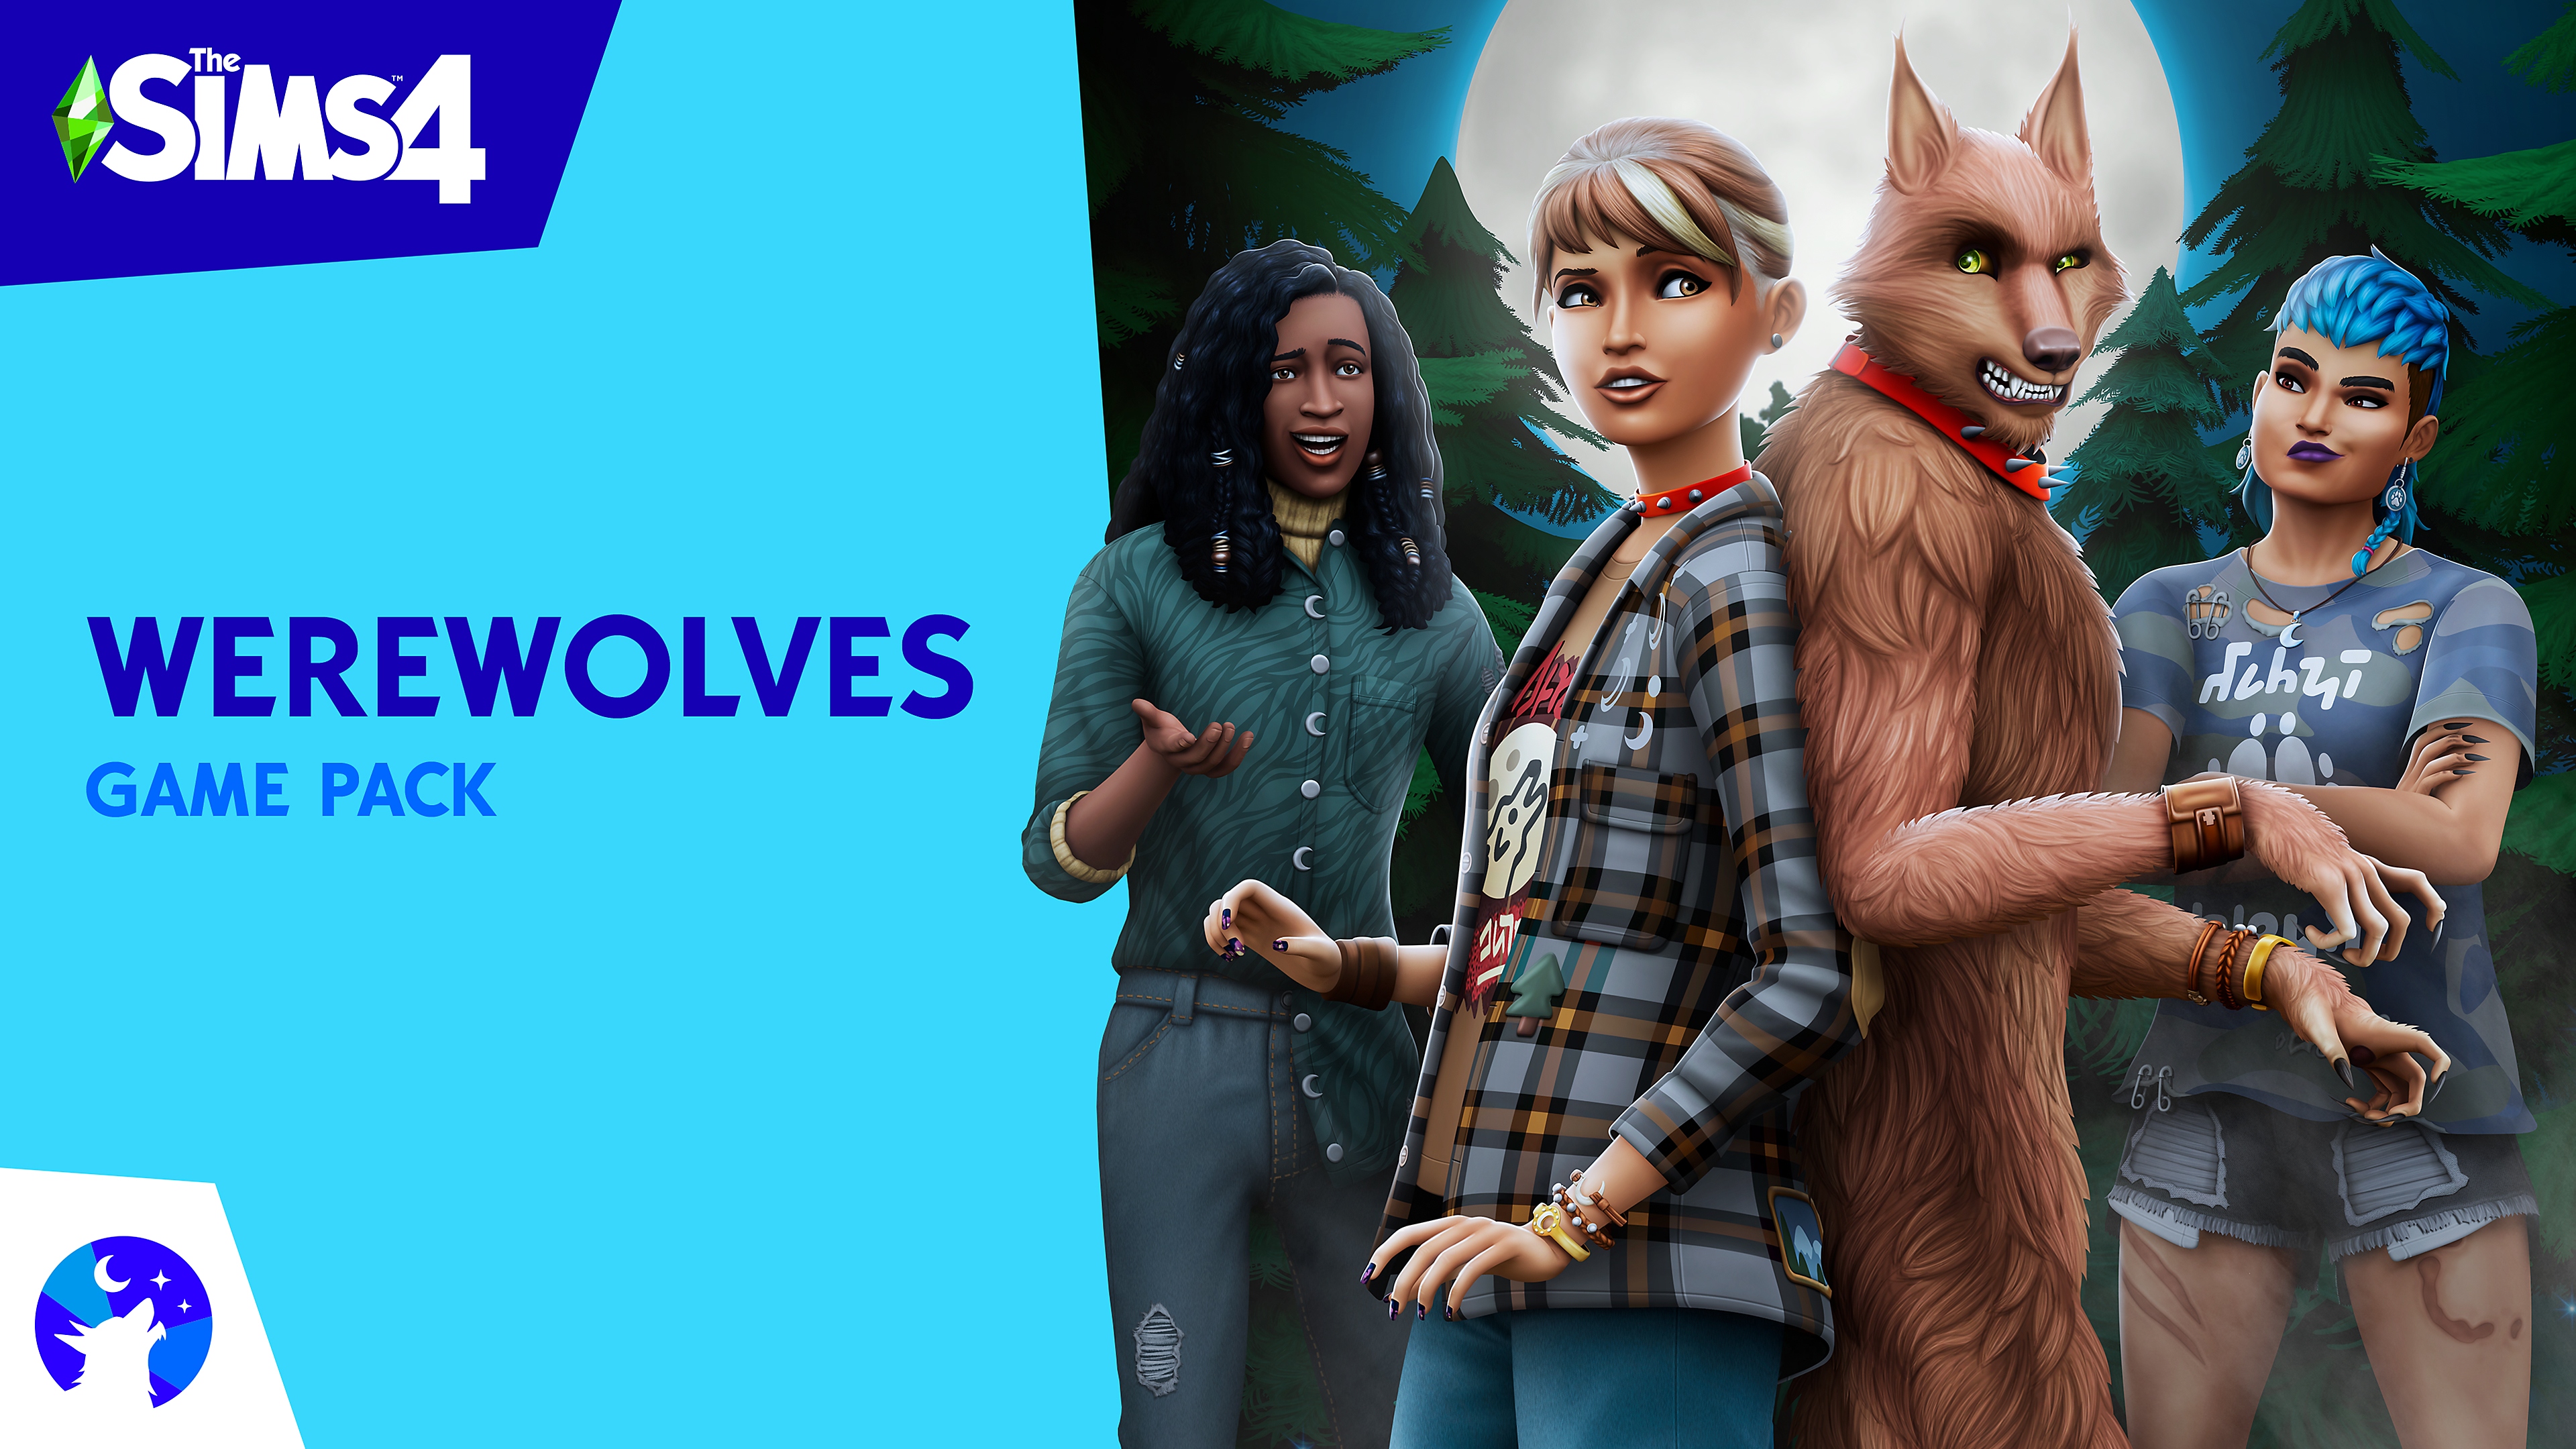 صورة فنية أساسية لحزمة Werewolves للعبة The Sims 4 تظهر فيها شخصيات Sims ومستذئب